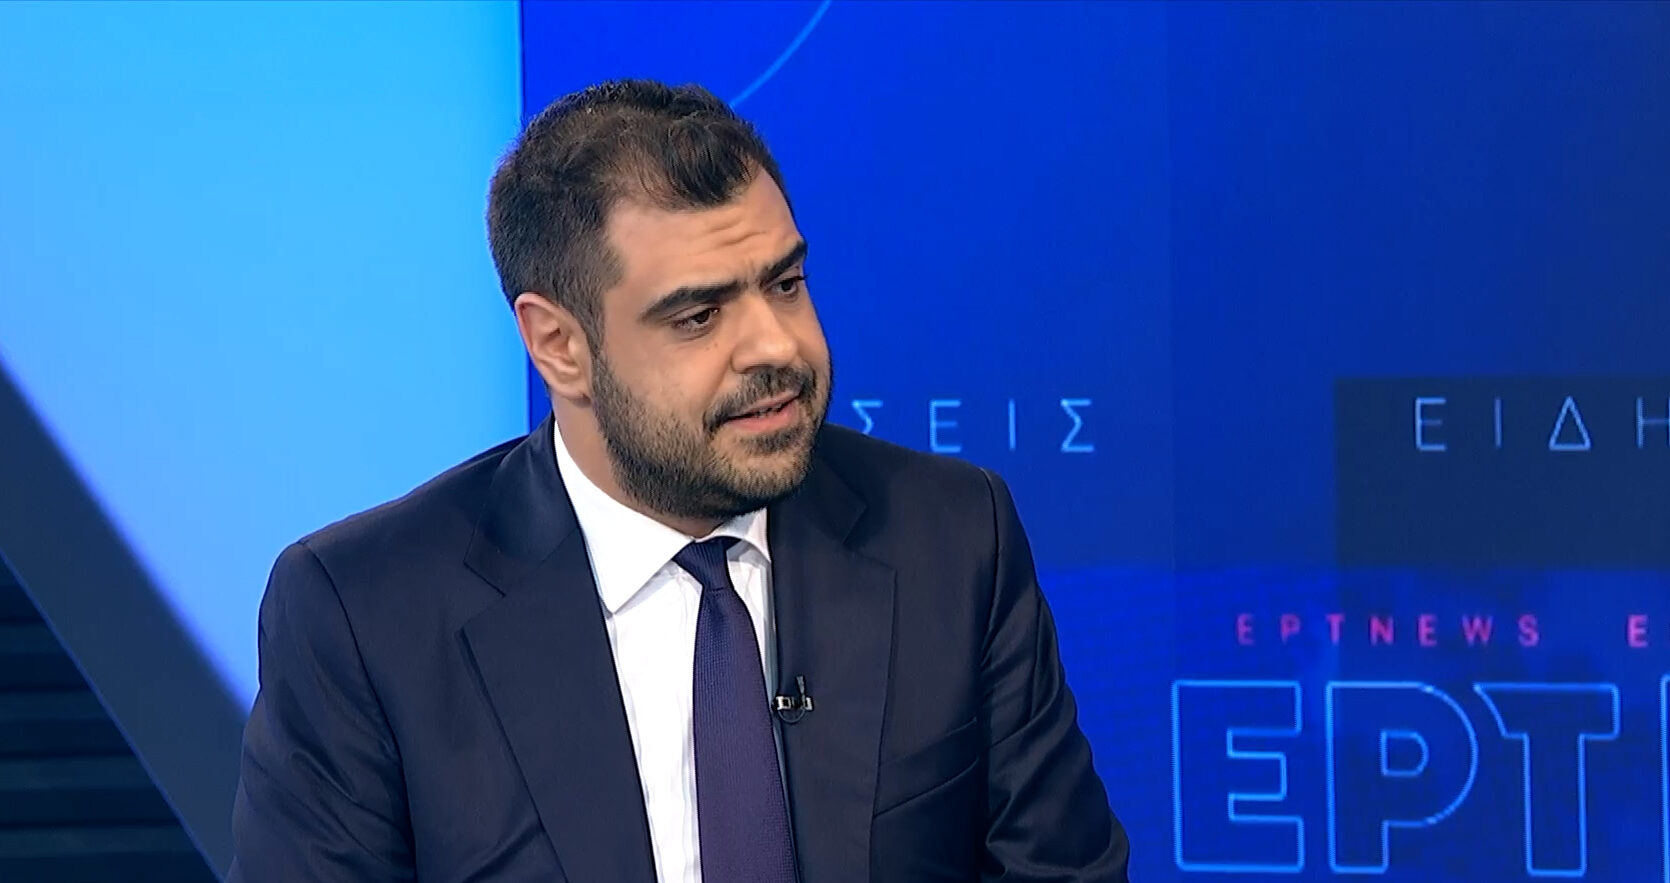 Π. Μαρινάκης στο ΕΡΤNews για Στ. Κασσελάκη: Μιλάει ο πρόεδρος ενός κόμματος – χορηγός της Χρυσής Αυγής